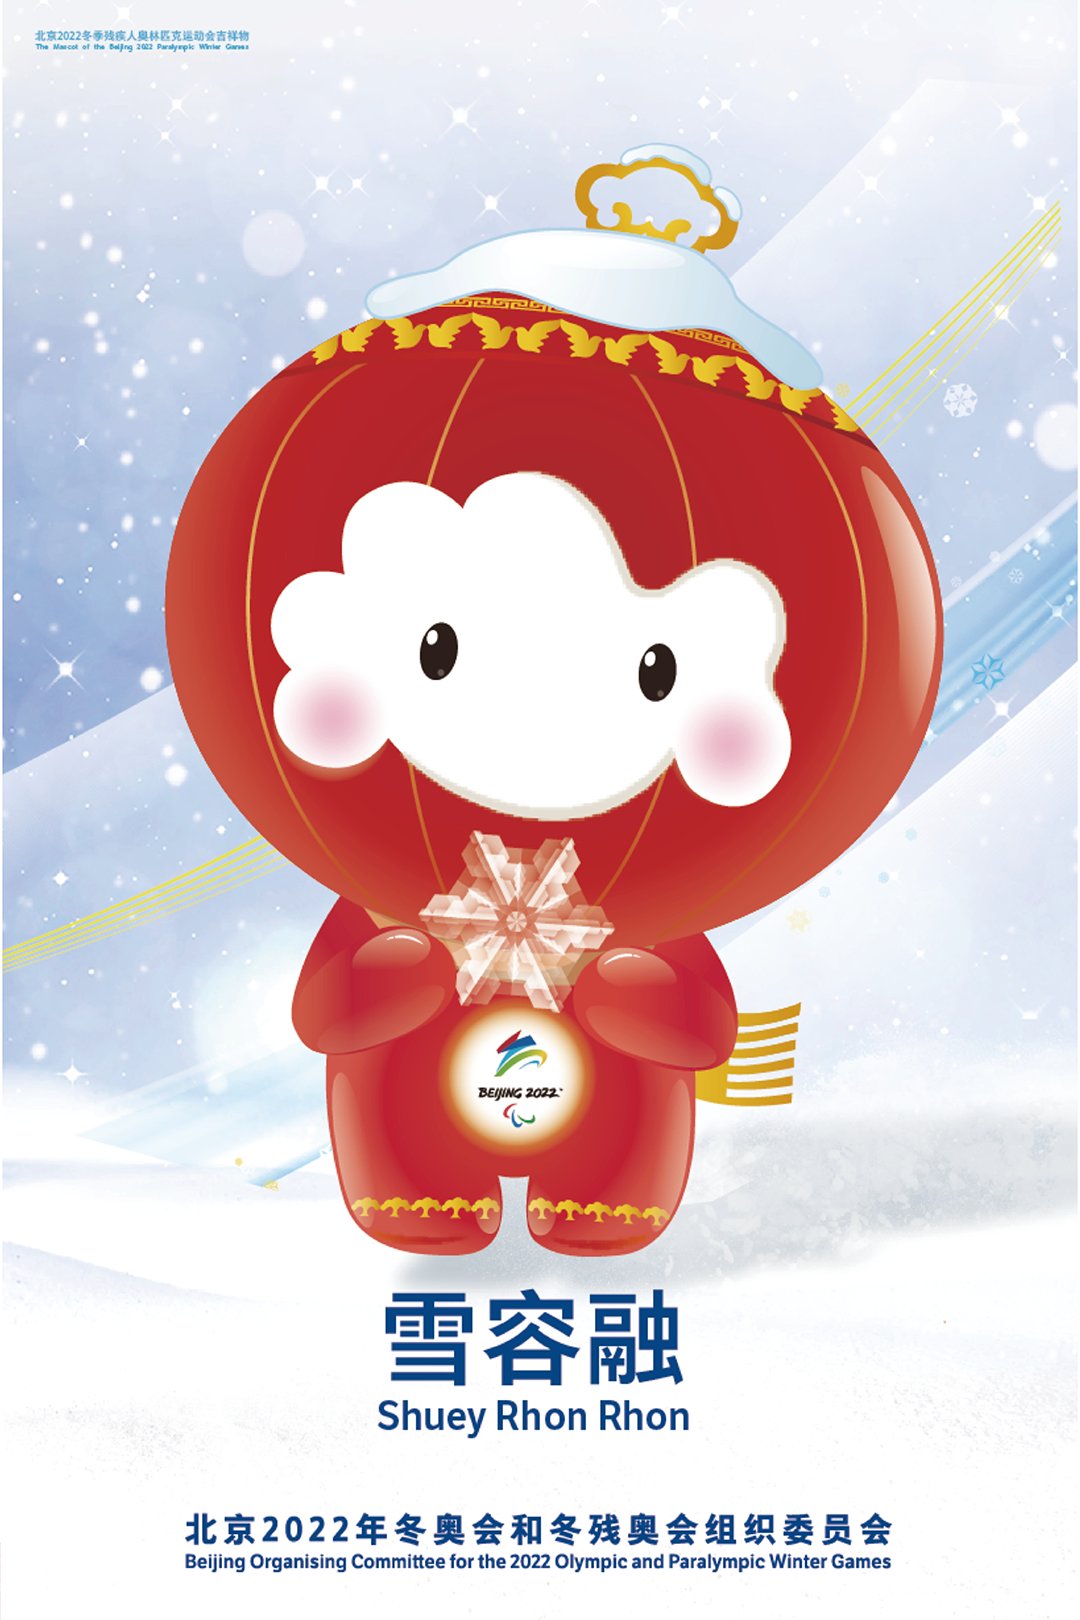 北京2022年冬奧會和冬殘奧會官方海報 (來自:北京冬奧組委官網)